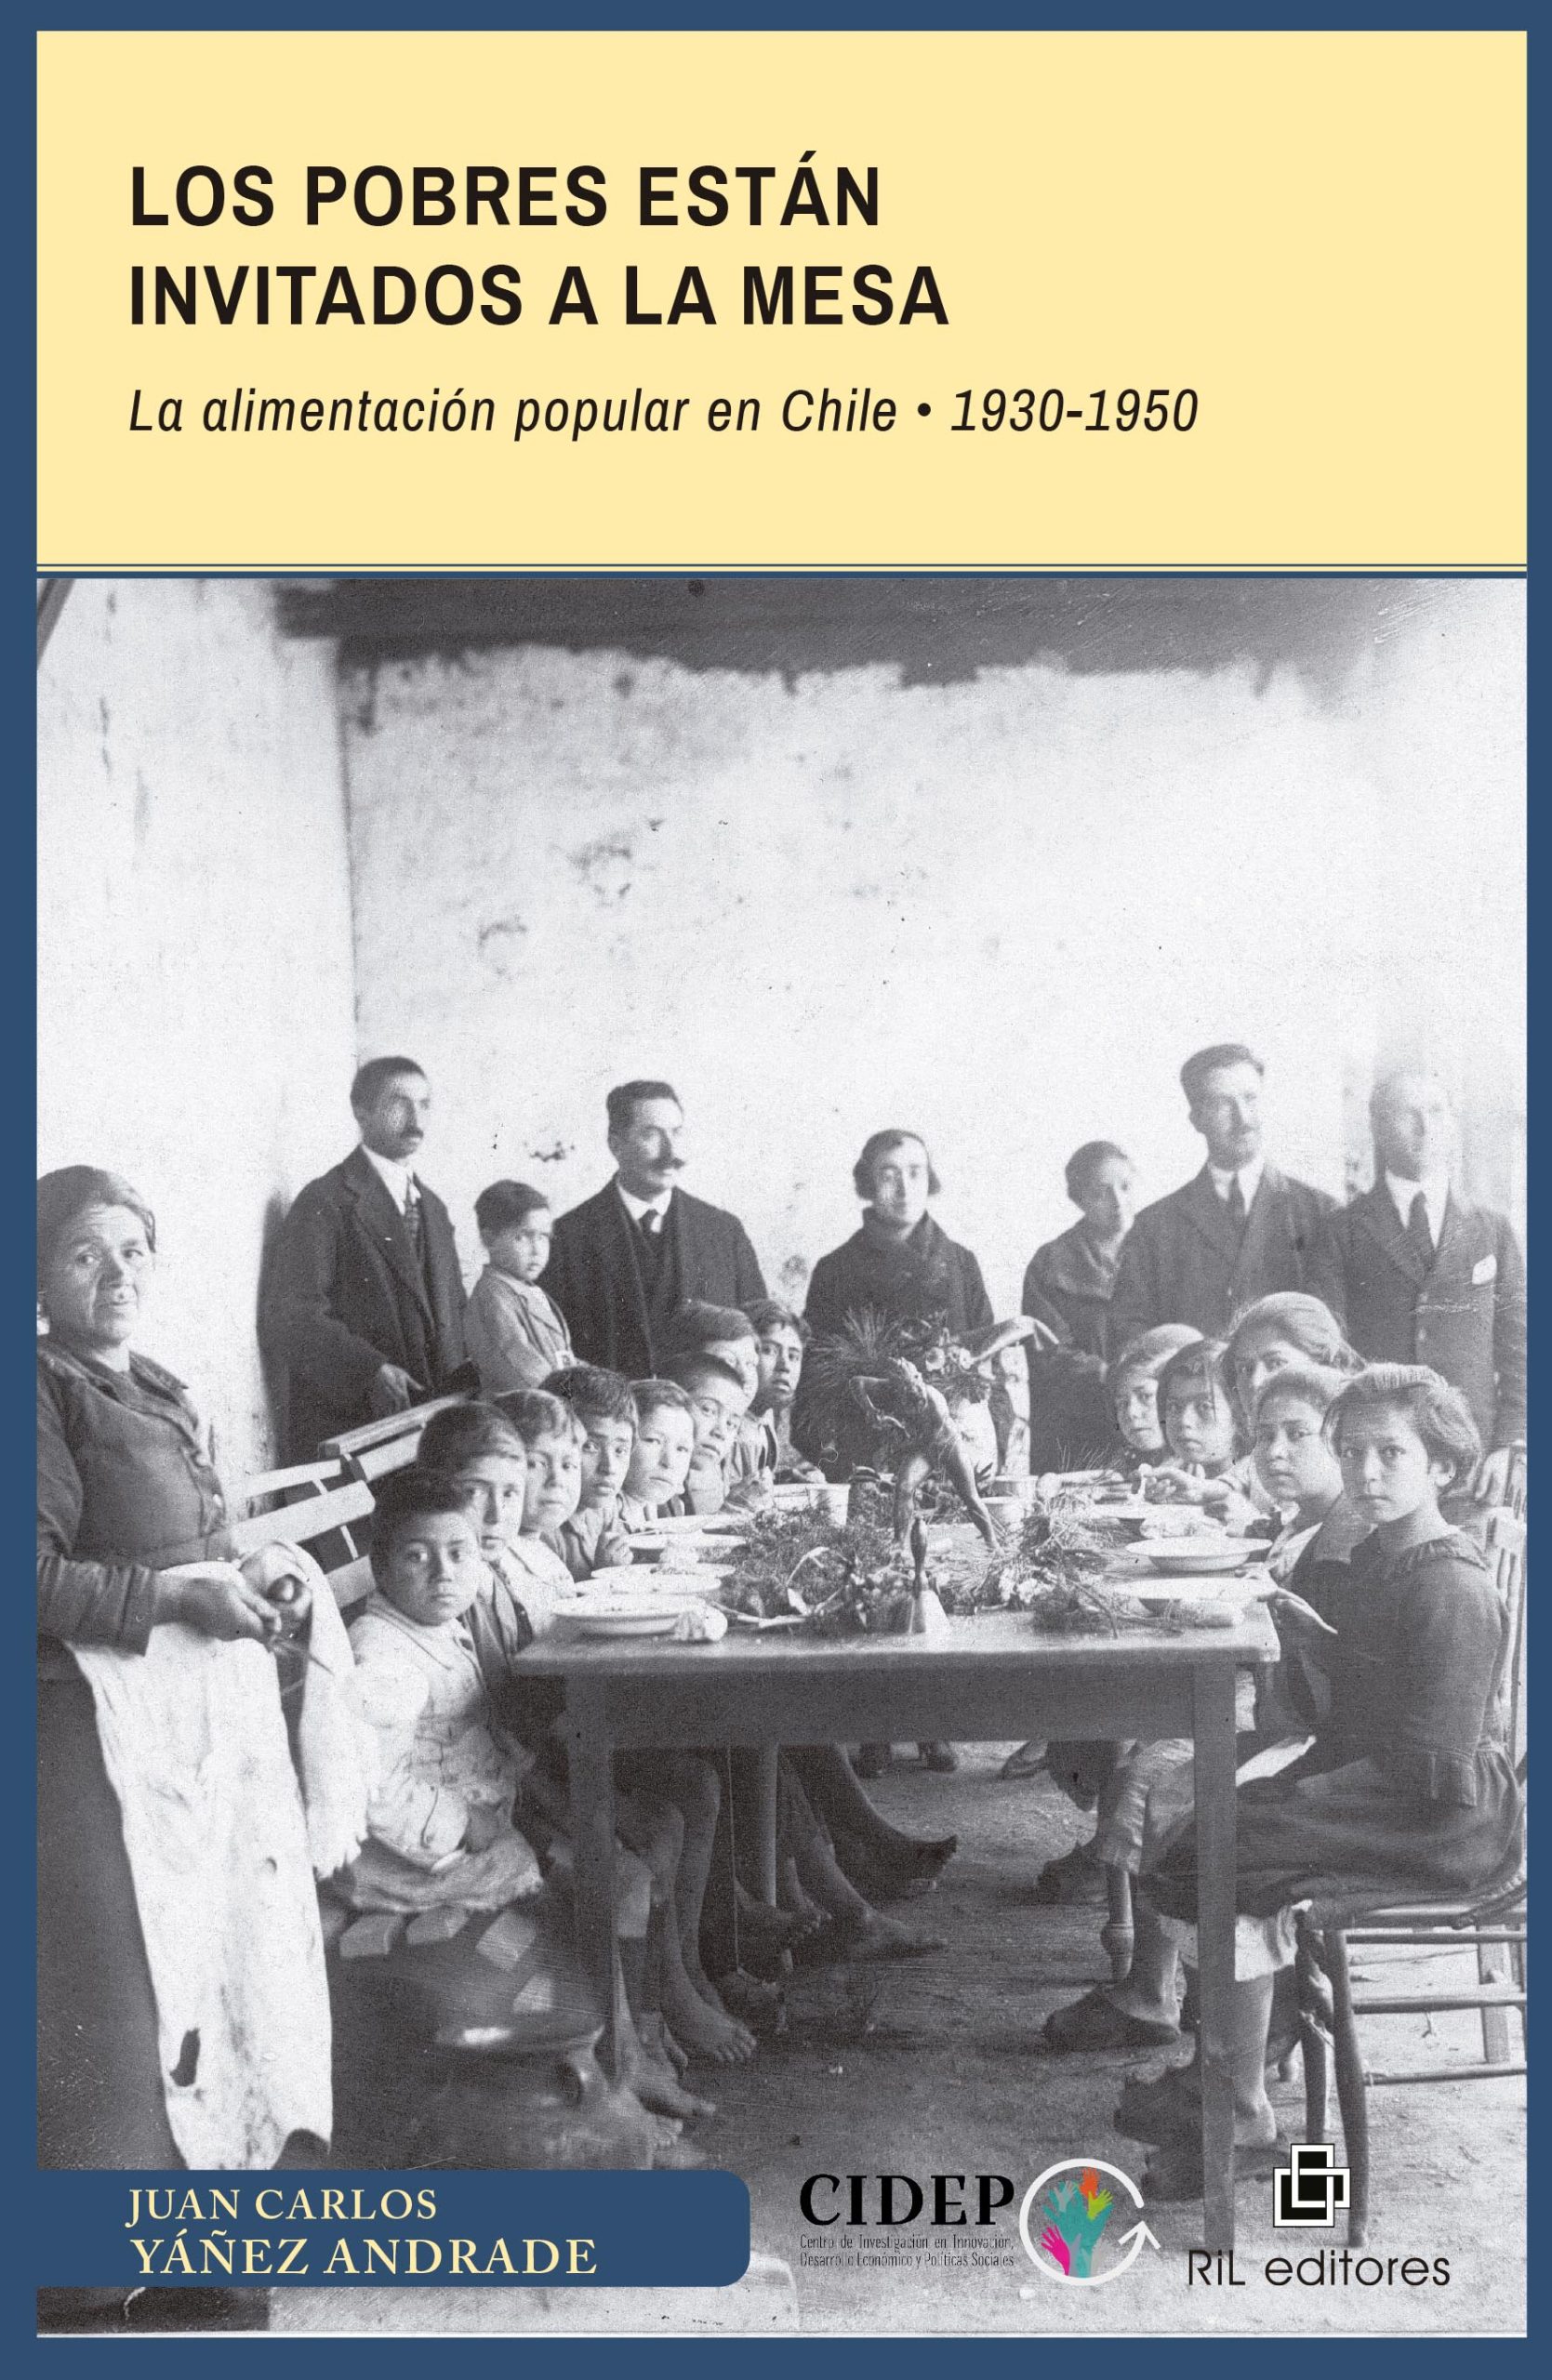 Los pobres están invitados a la mesa. La alimentación popular en Chile: 1930-1950 1